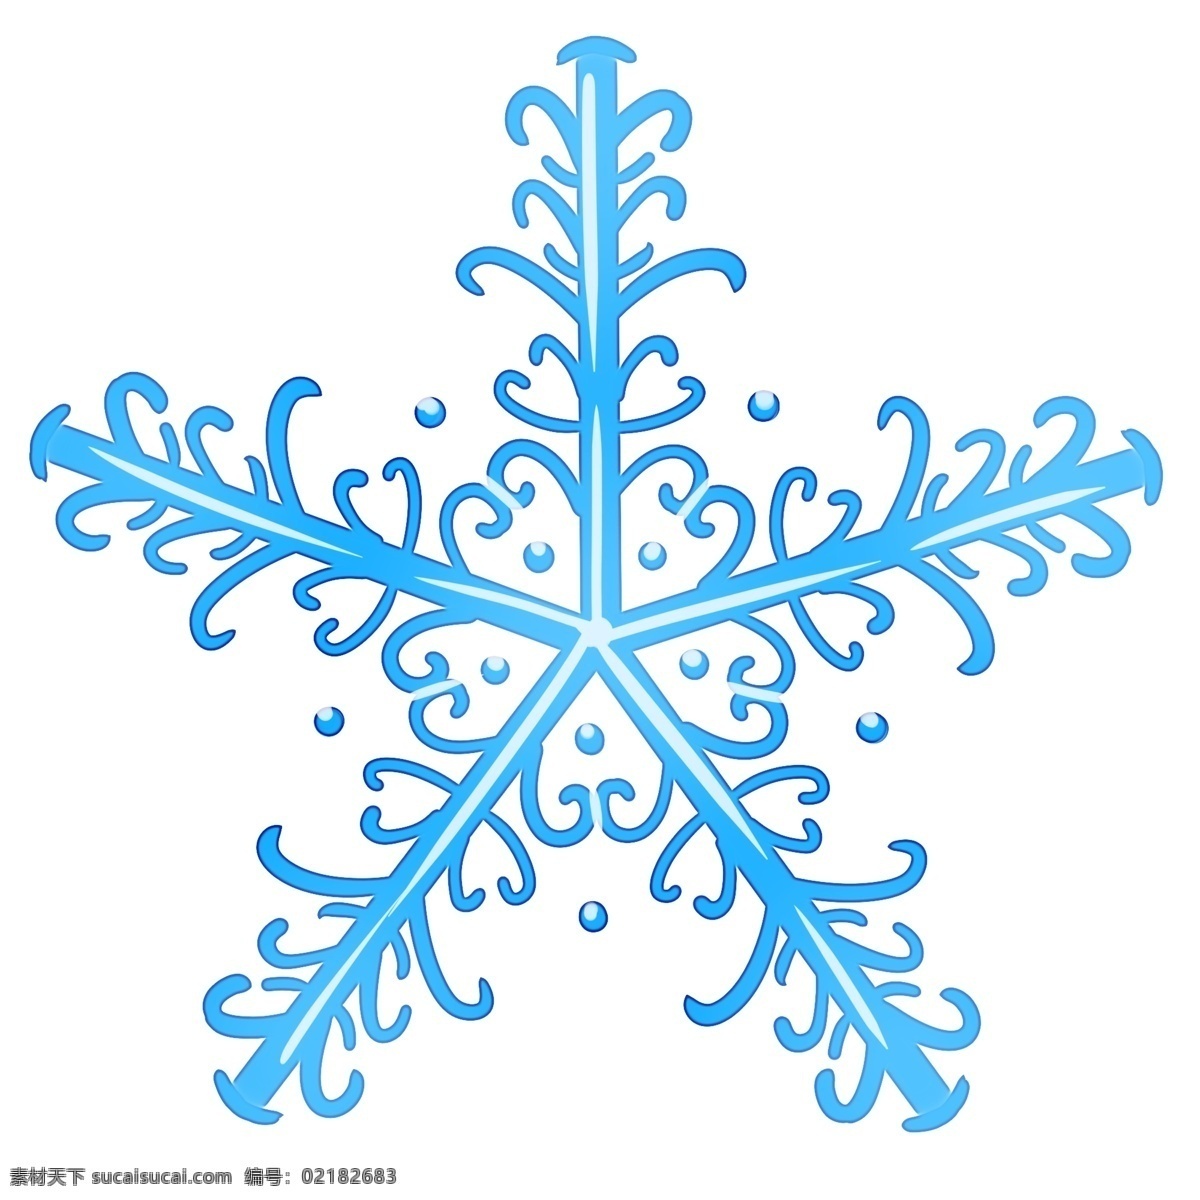 冬日 飘 雪 晶莹 雪花 冬天下雪 雪花的形状 蓝色雪花 晶莹雪花 亮晶晶的雪花 原创雪花图形 萌萌的雪花